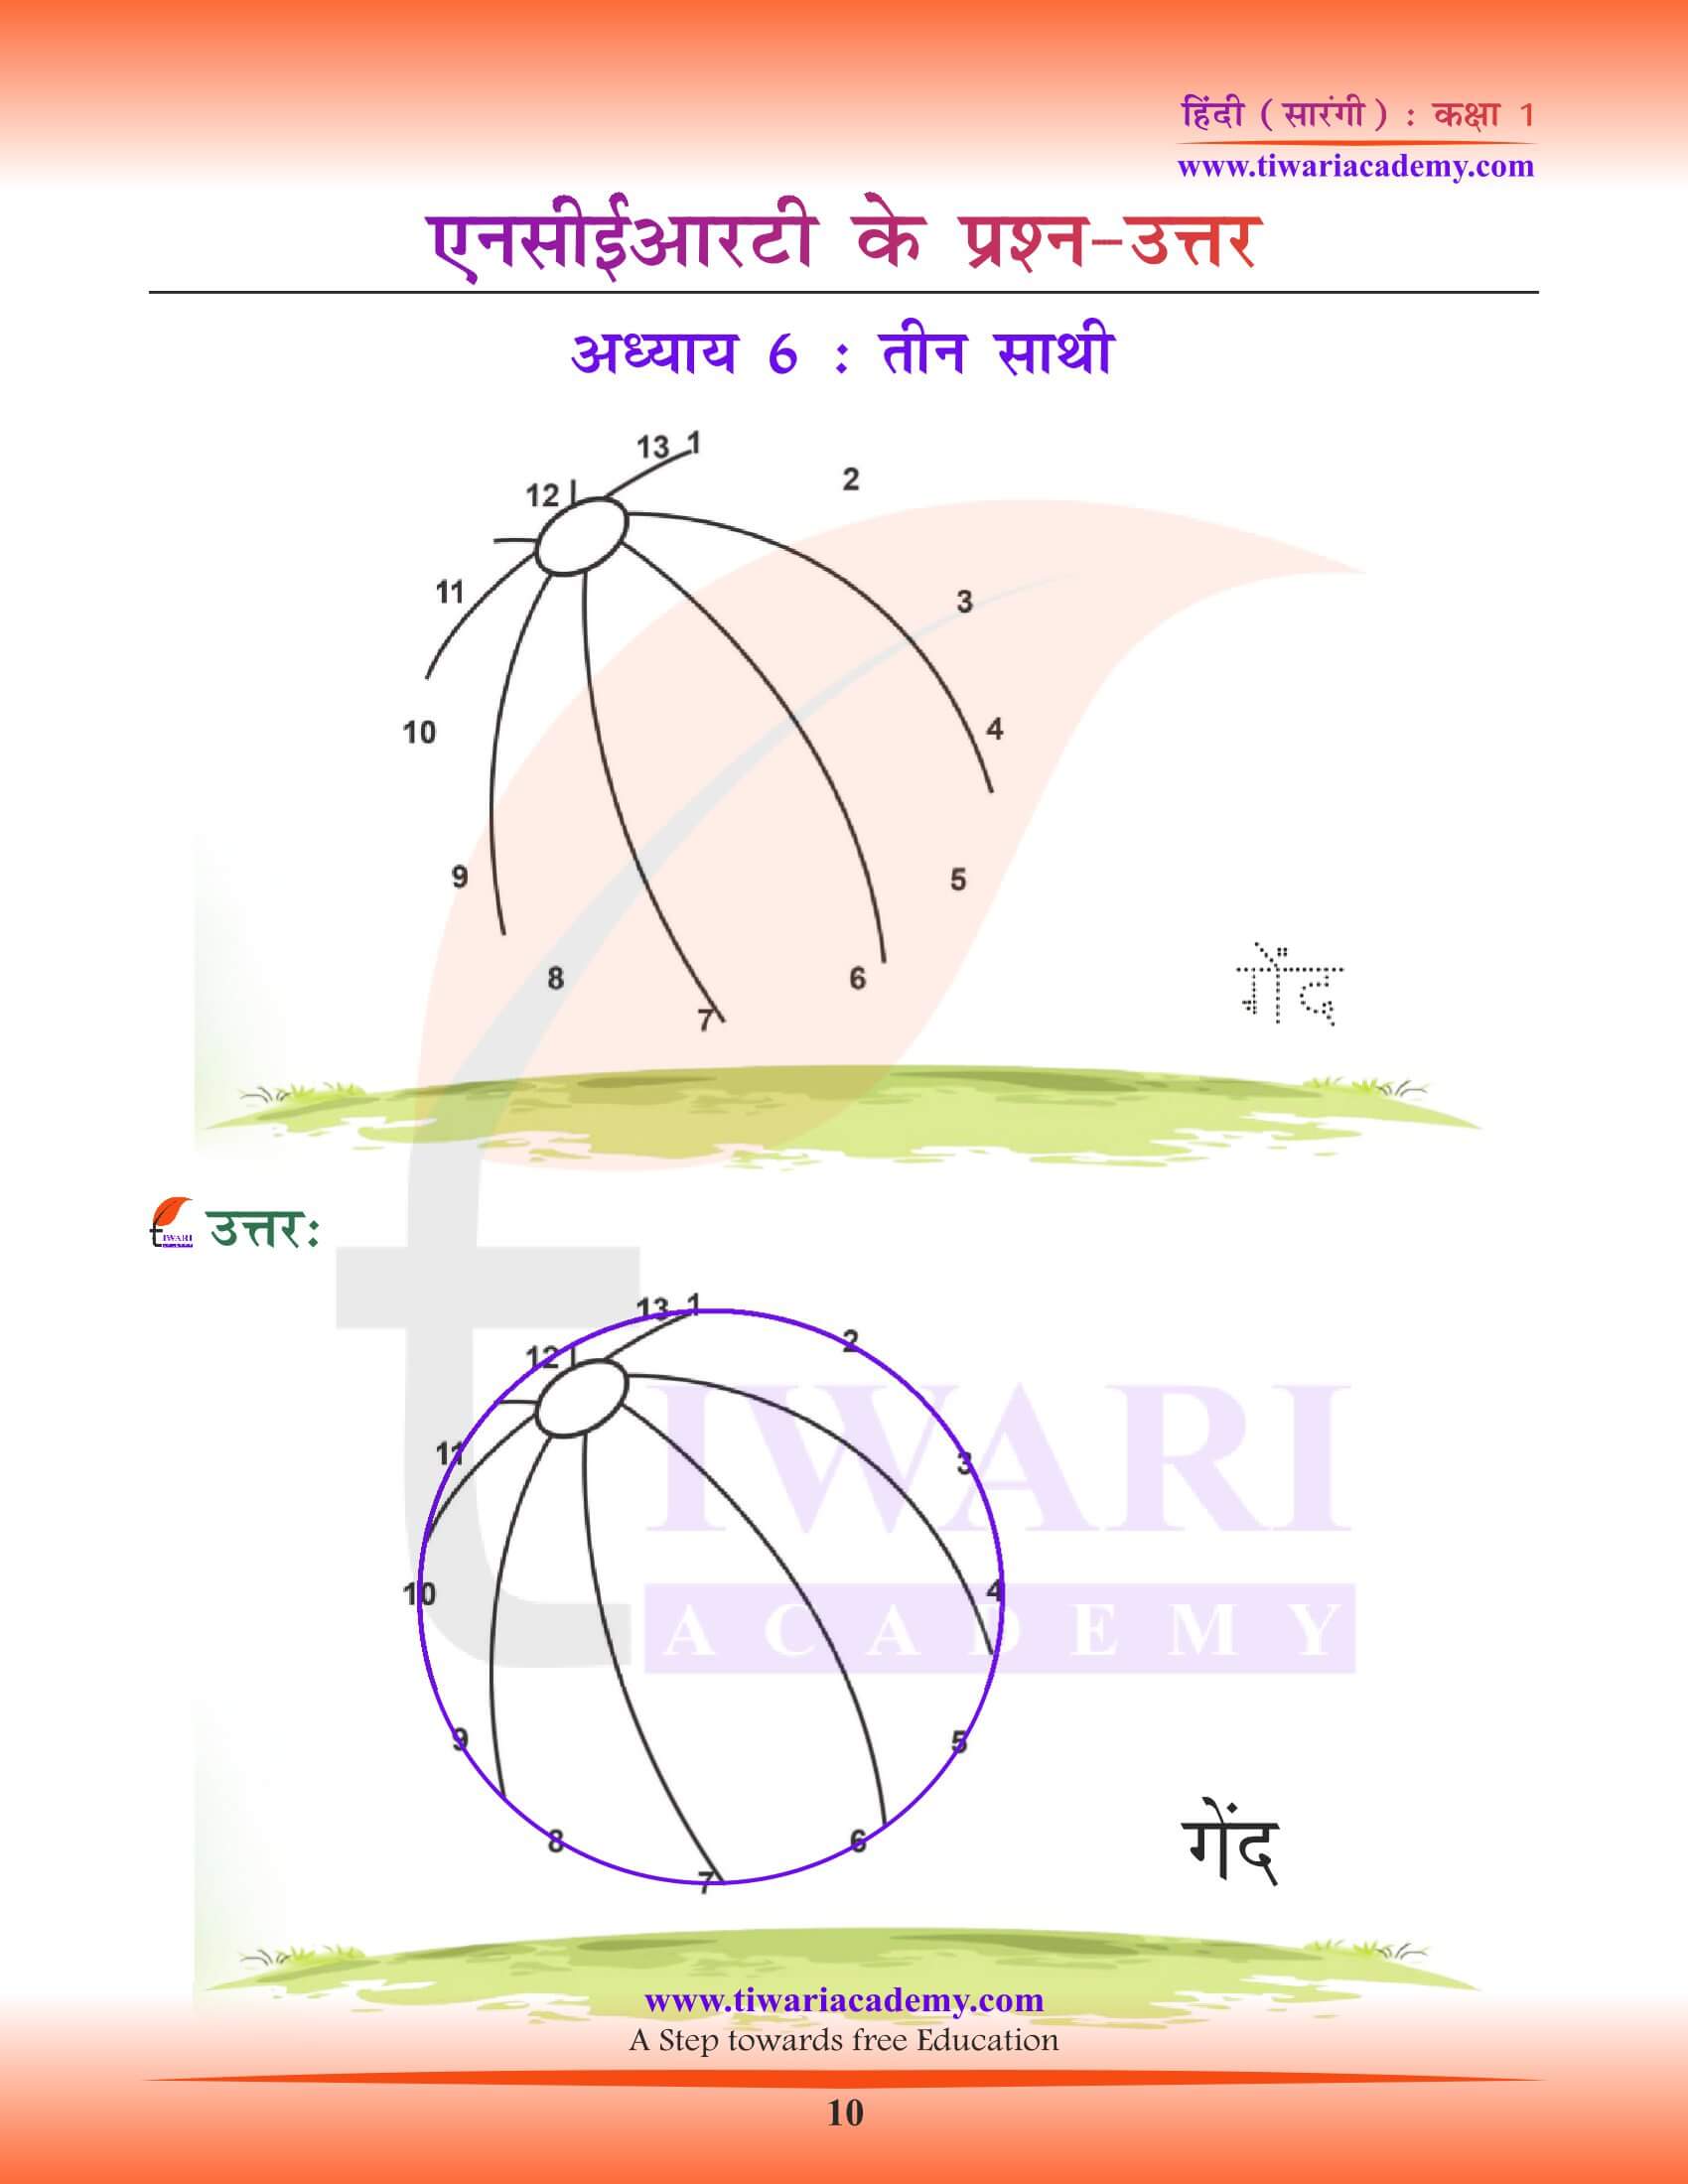 कक्षा 1 हिंदी सारंगी पाठ 6 के हल